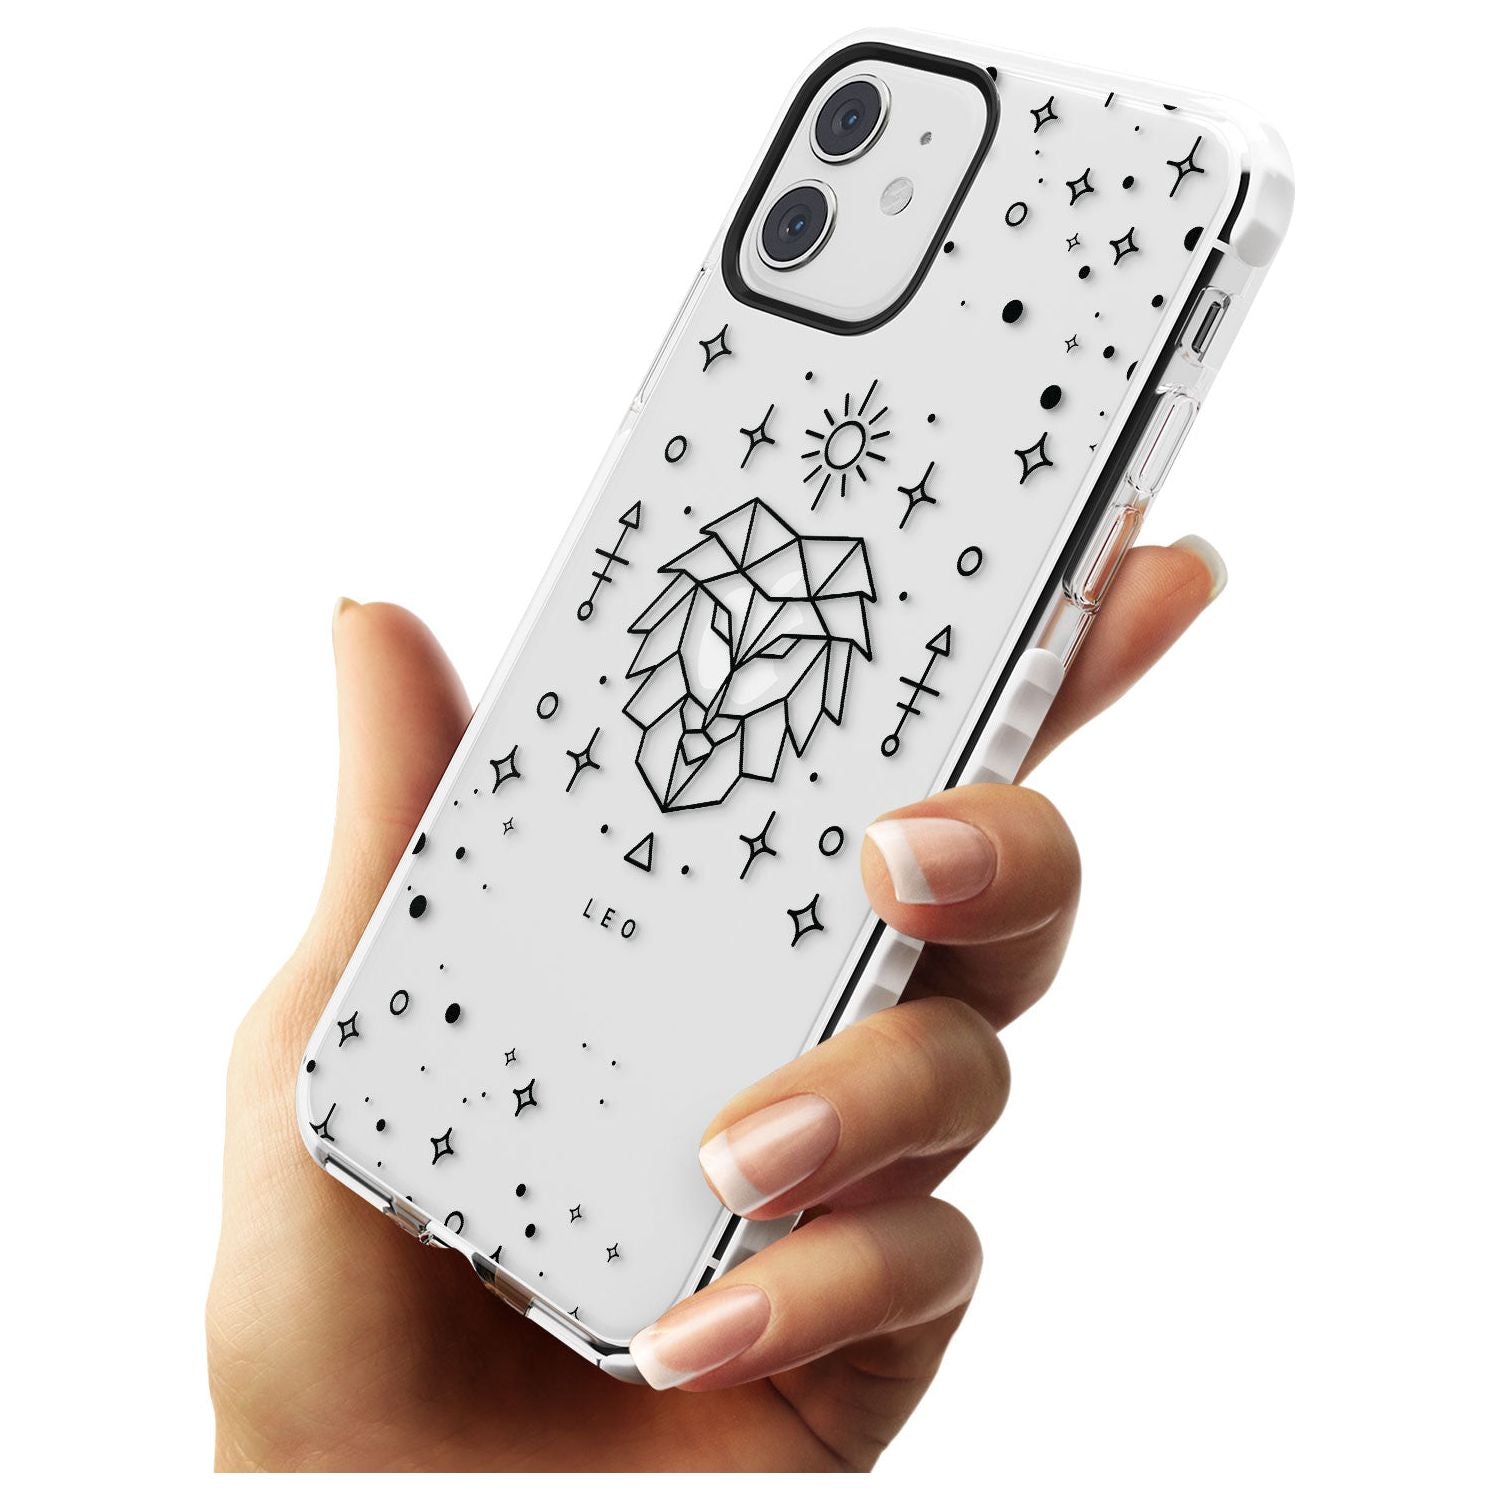 Leo Emblem - Transparent Design Impact Phone Case for iPhone 11